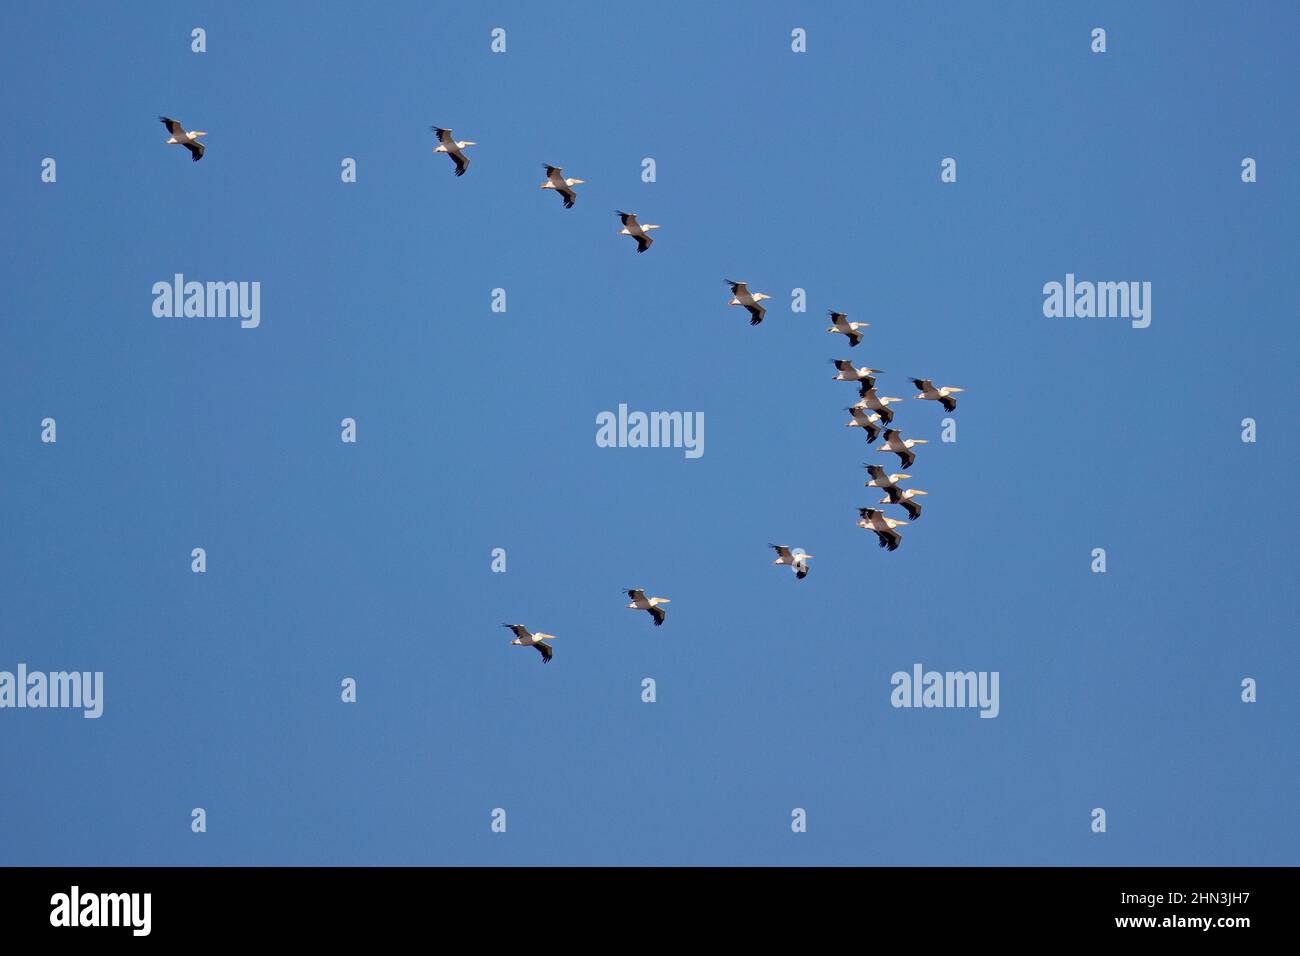 Herde weißer Pelikane, die in klarem blauen Himmel über dem Hula-Tal fliegen, einer wichtigen Flugroute für die Vogelwanderung zwischen Europa, Asien und Afrika Stockfoto